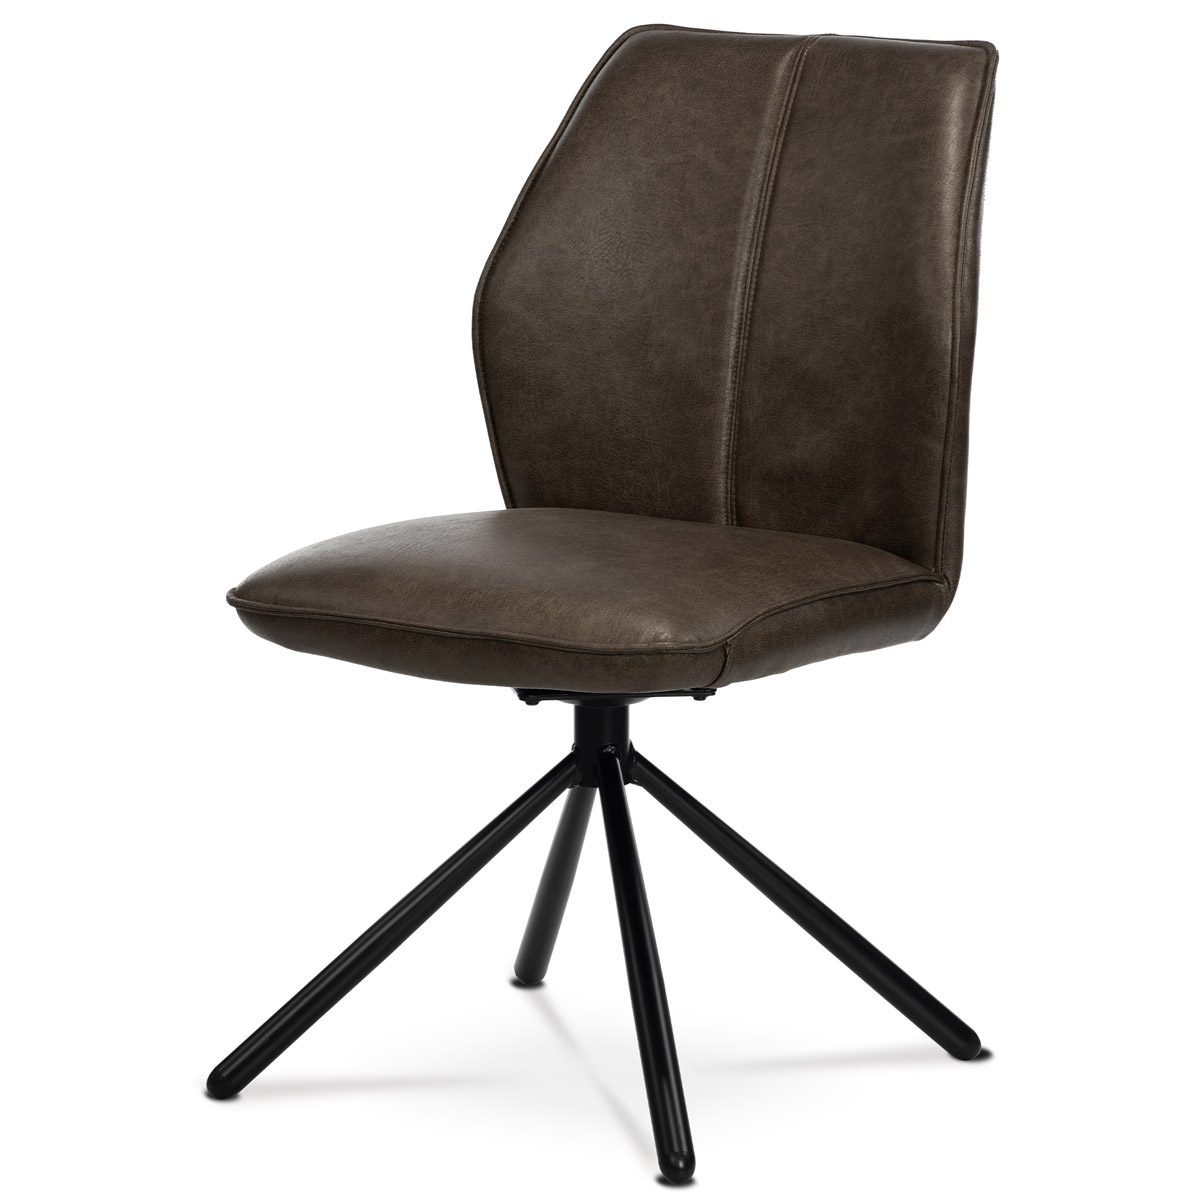 Jídelní židle, hnědá látka v dekoru vintage kůže, kov - černý lak, zpětný mech.